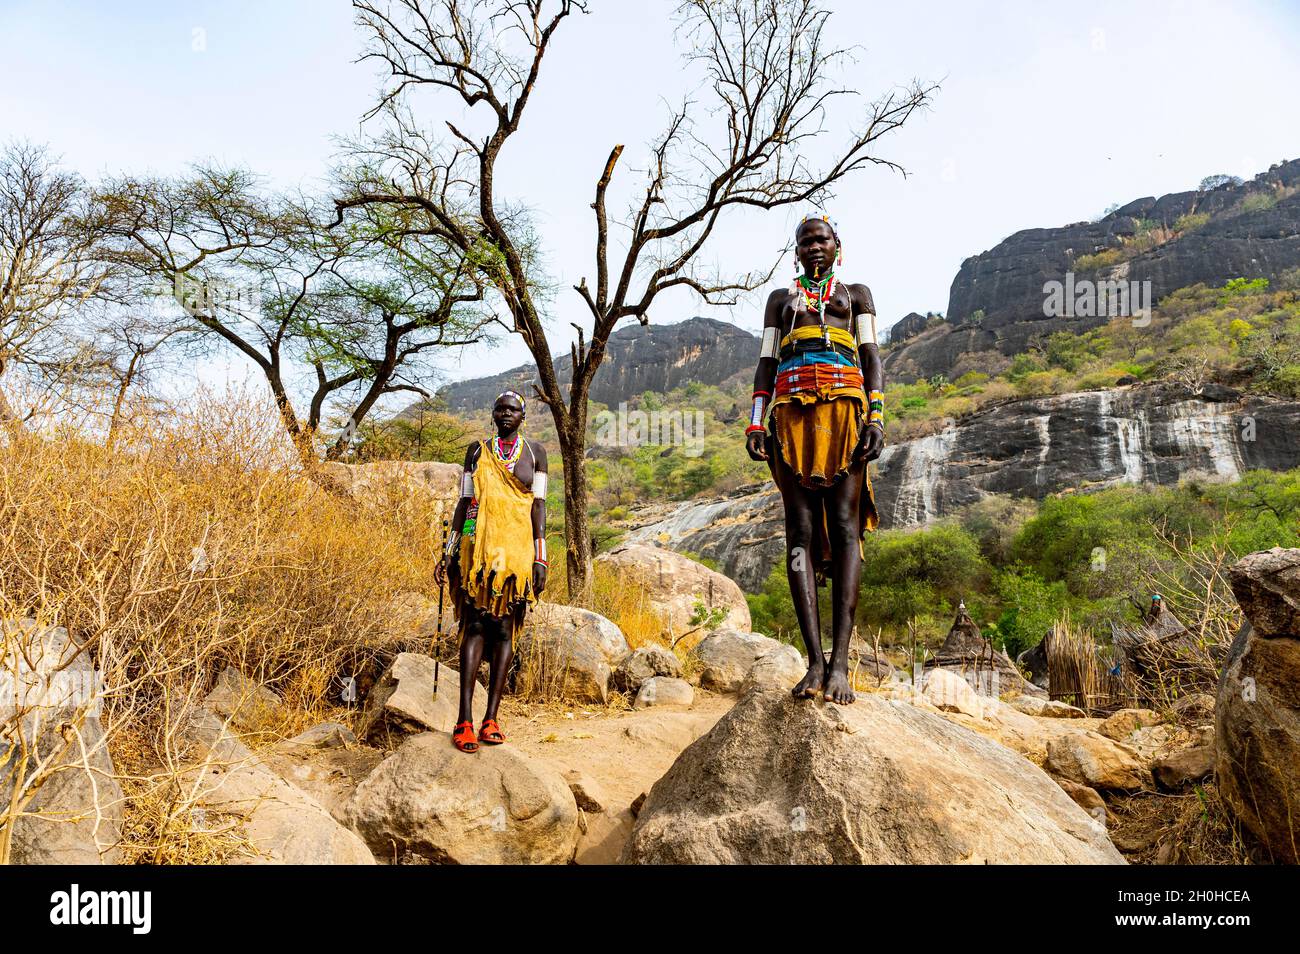 Traditionell gekleidete junge Mädchen aus dem Stamm der Laarim stehen auf einem Felsen, Boya Hills, Eastern Equatoria, Südsudan Stockfoto